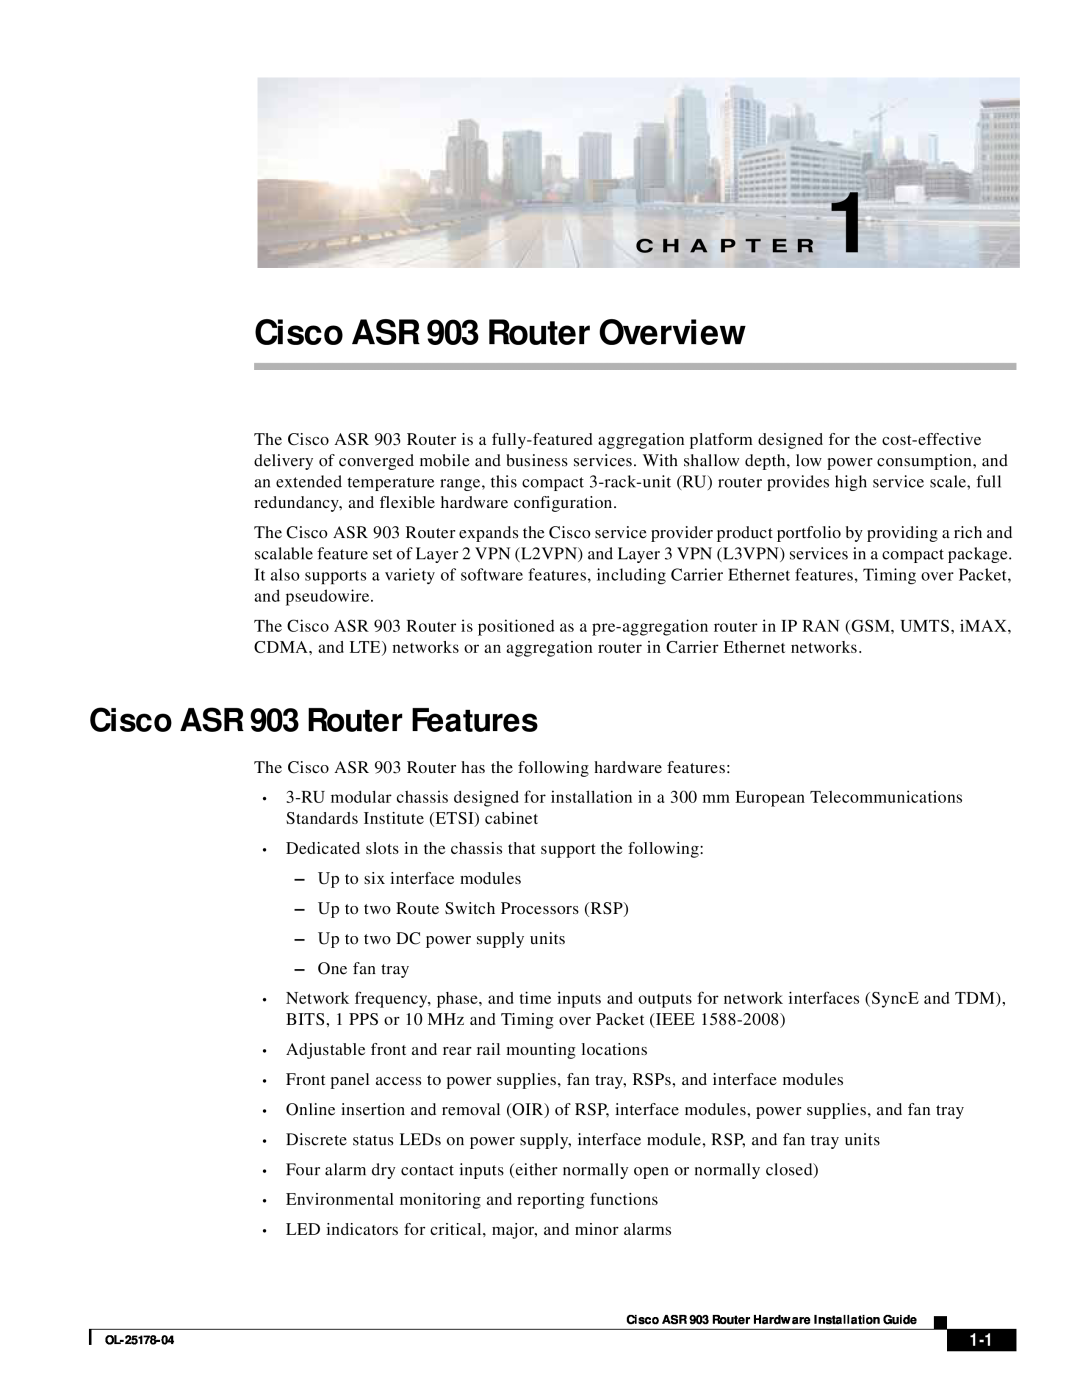 Cisco Systems manual Cisco ASR 903 Router Overview, Cisco ASR 903 Router Features, C H A P T E R 